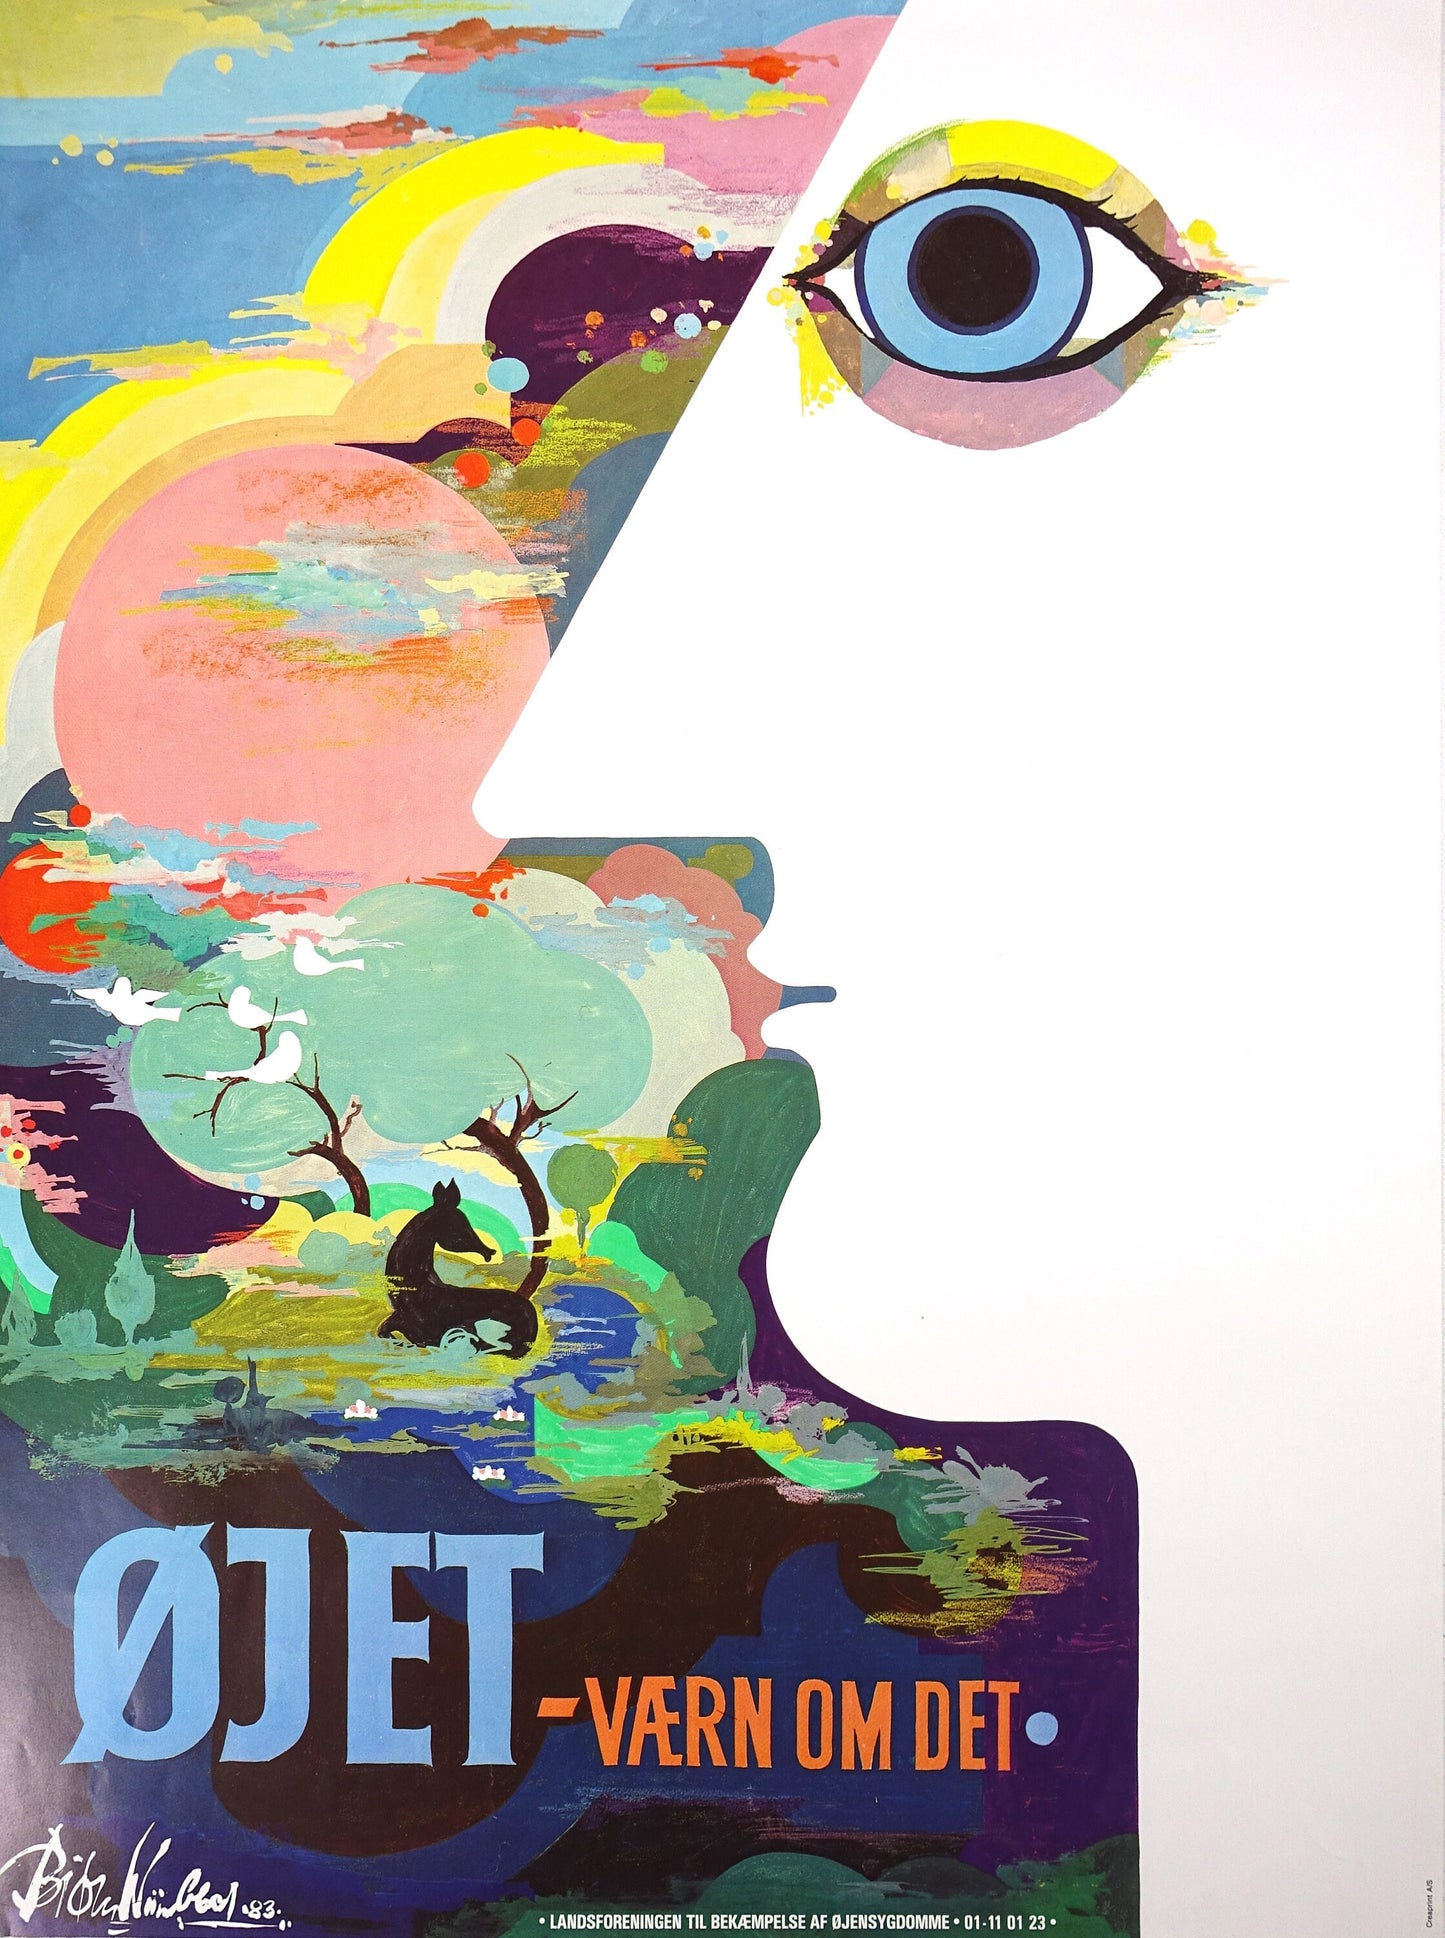 1983 Bjørn Wiinblad's "The Eye" - Original Vintage Poster